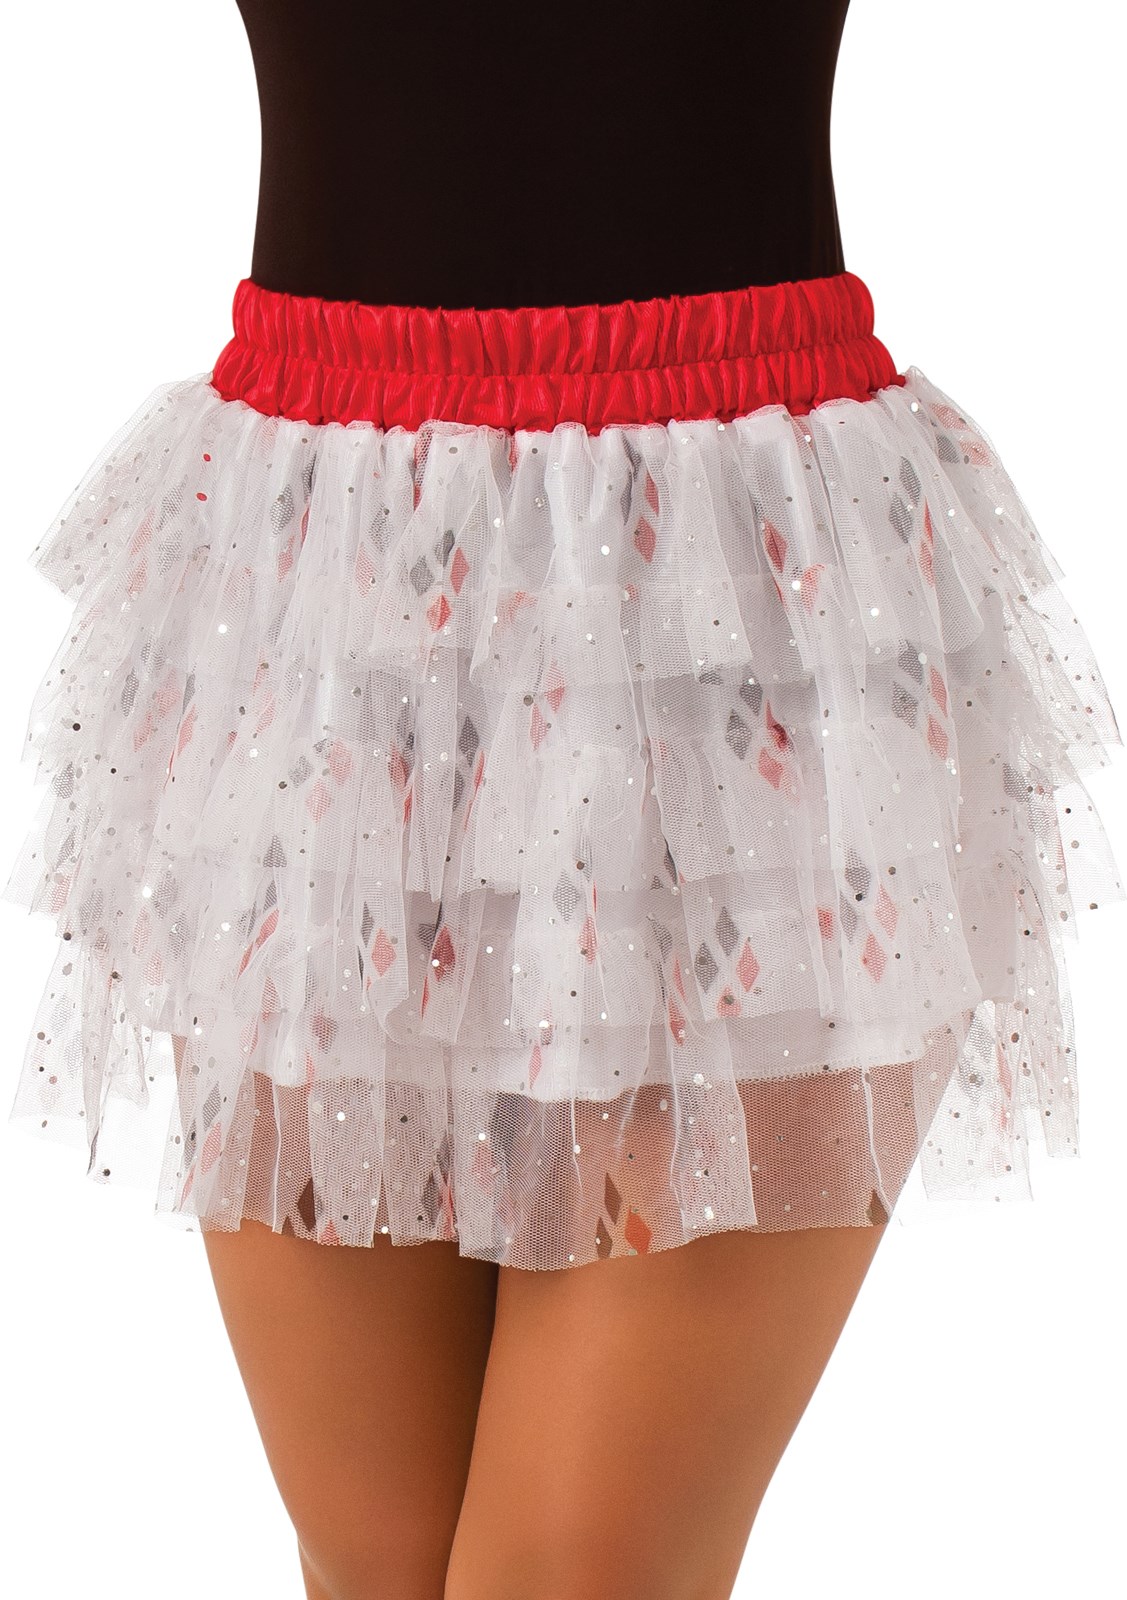 Harley Quinn Tutu Skirt For Women